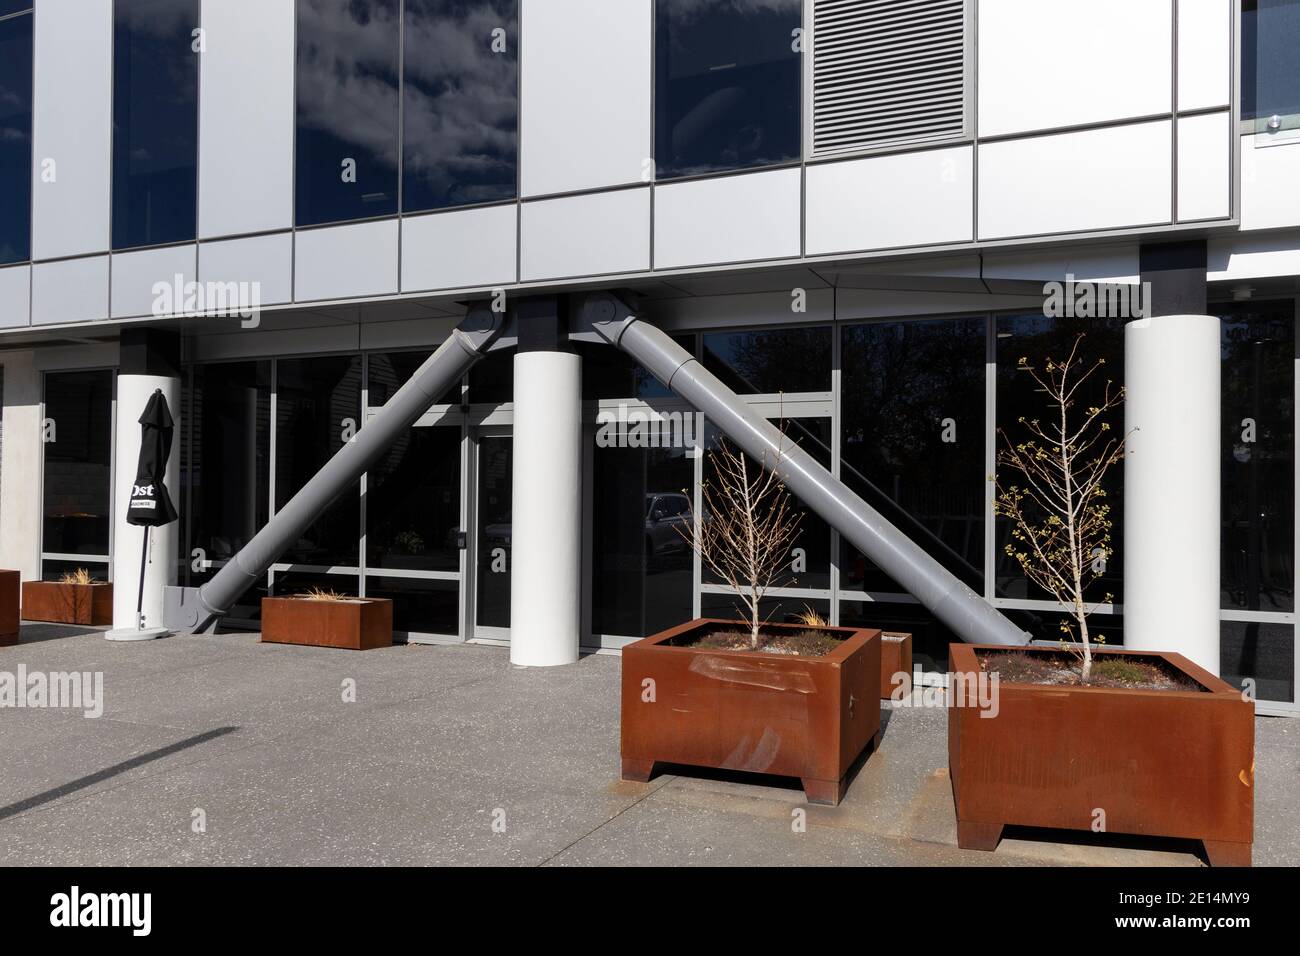 Beispiel für mit Silizium gefüllte hydraulische Stößelfederbeine, die in Gebäuden mit Erdbebenzonen verwendet werden. Umgesetzt auf jeder Etage. Christchurch, Neuseeland. Stockfoto